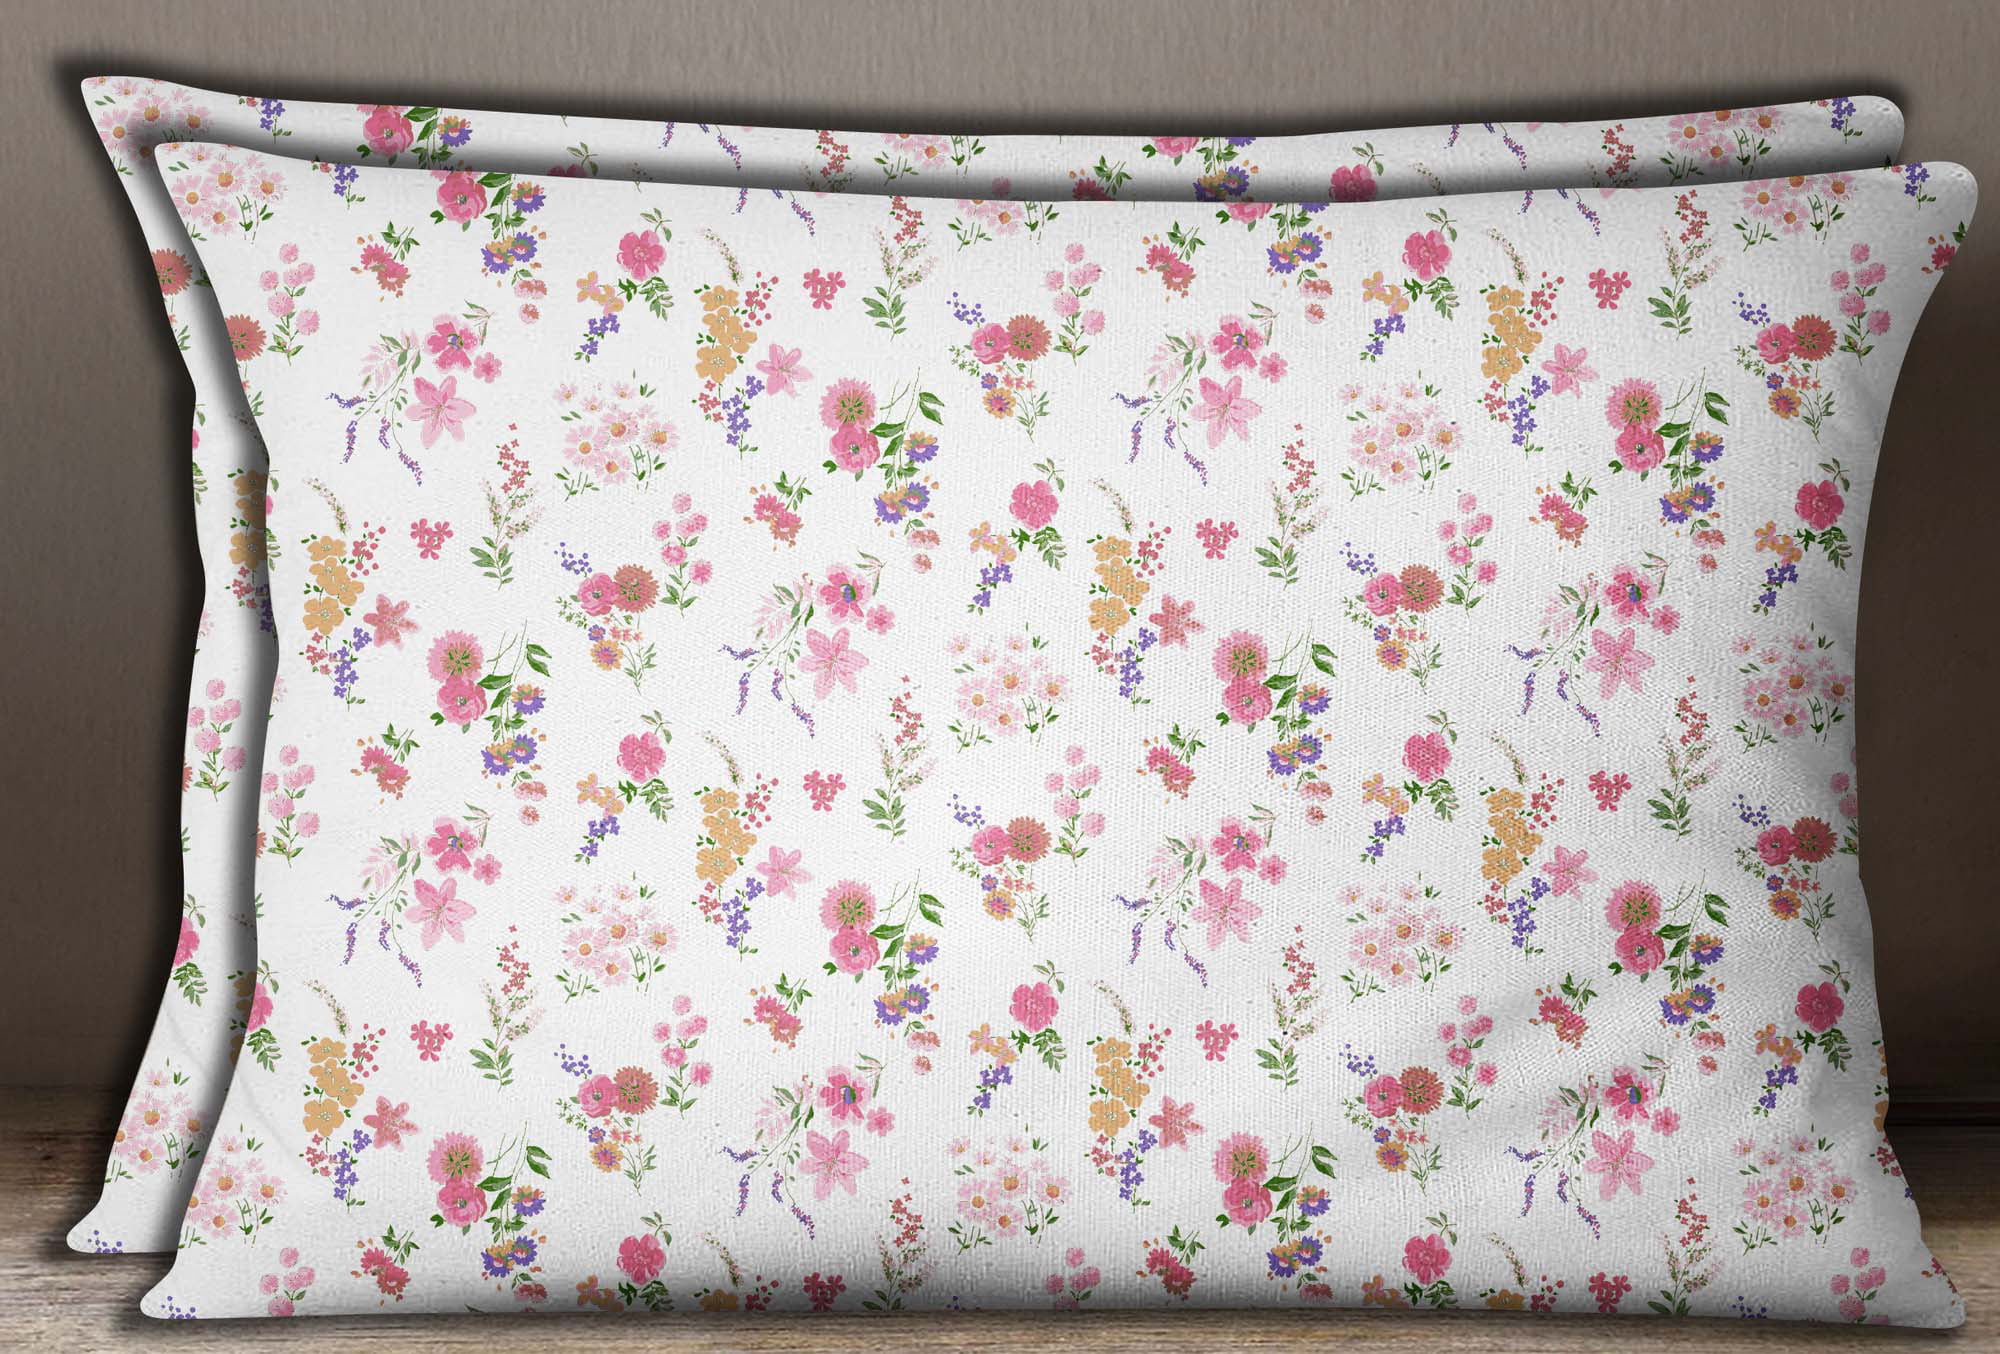 Details about   S4Sassy Dusty Floral Print Cotton Poplin 2 Pcs Rectangle Pillow Sham 